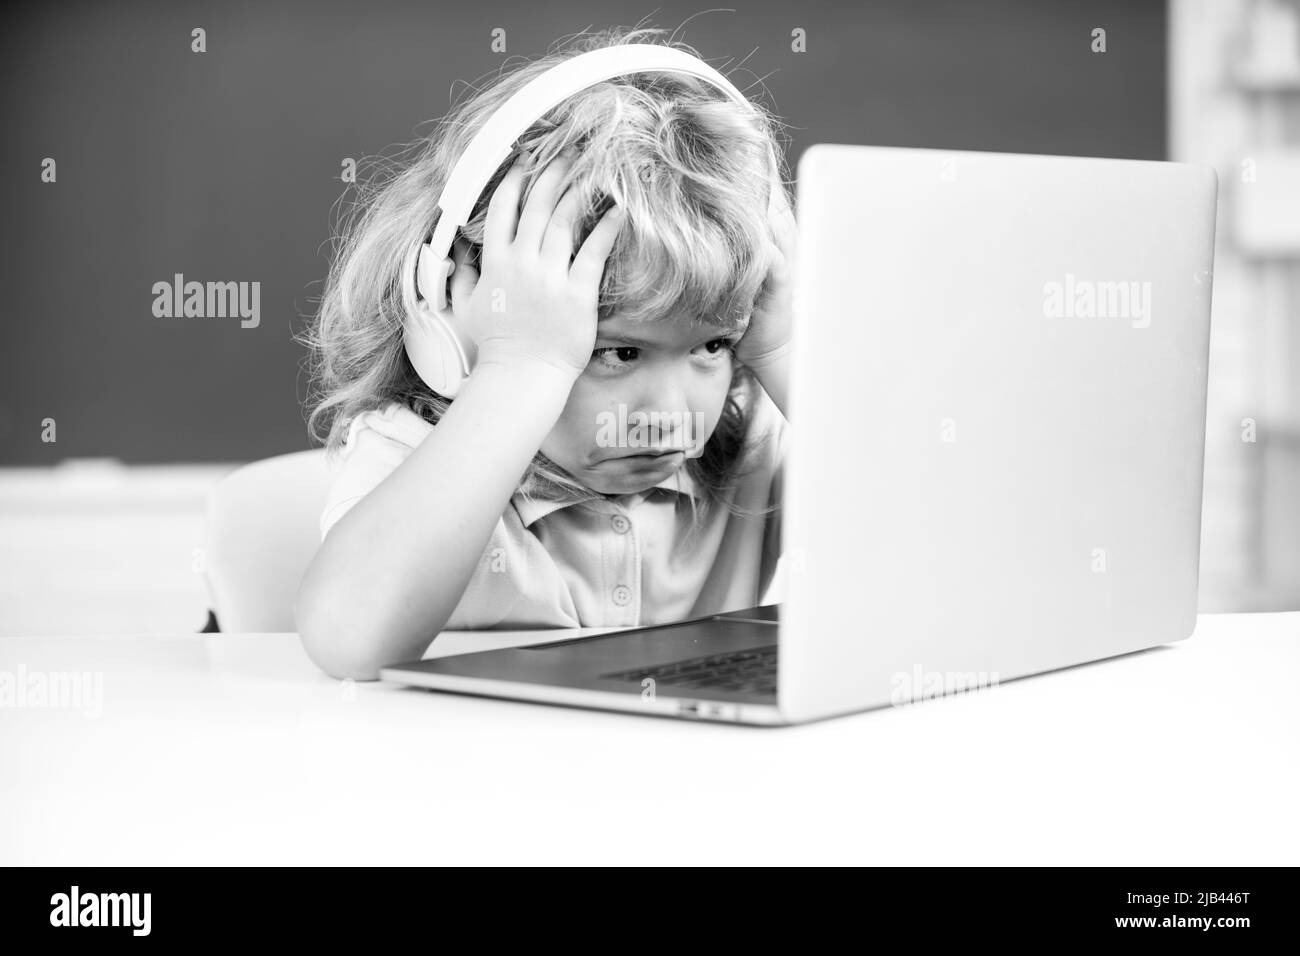 Un garçon triste en colère dans un casque s'assoit au bureau, étudie en ligne sur un ordinateur portable à l'école, klever enfant porte des écouteurs dans l'apprentissage d'un ordinateur portable en utilisant des leçons d'Internet. Banque D'Images